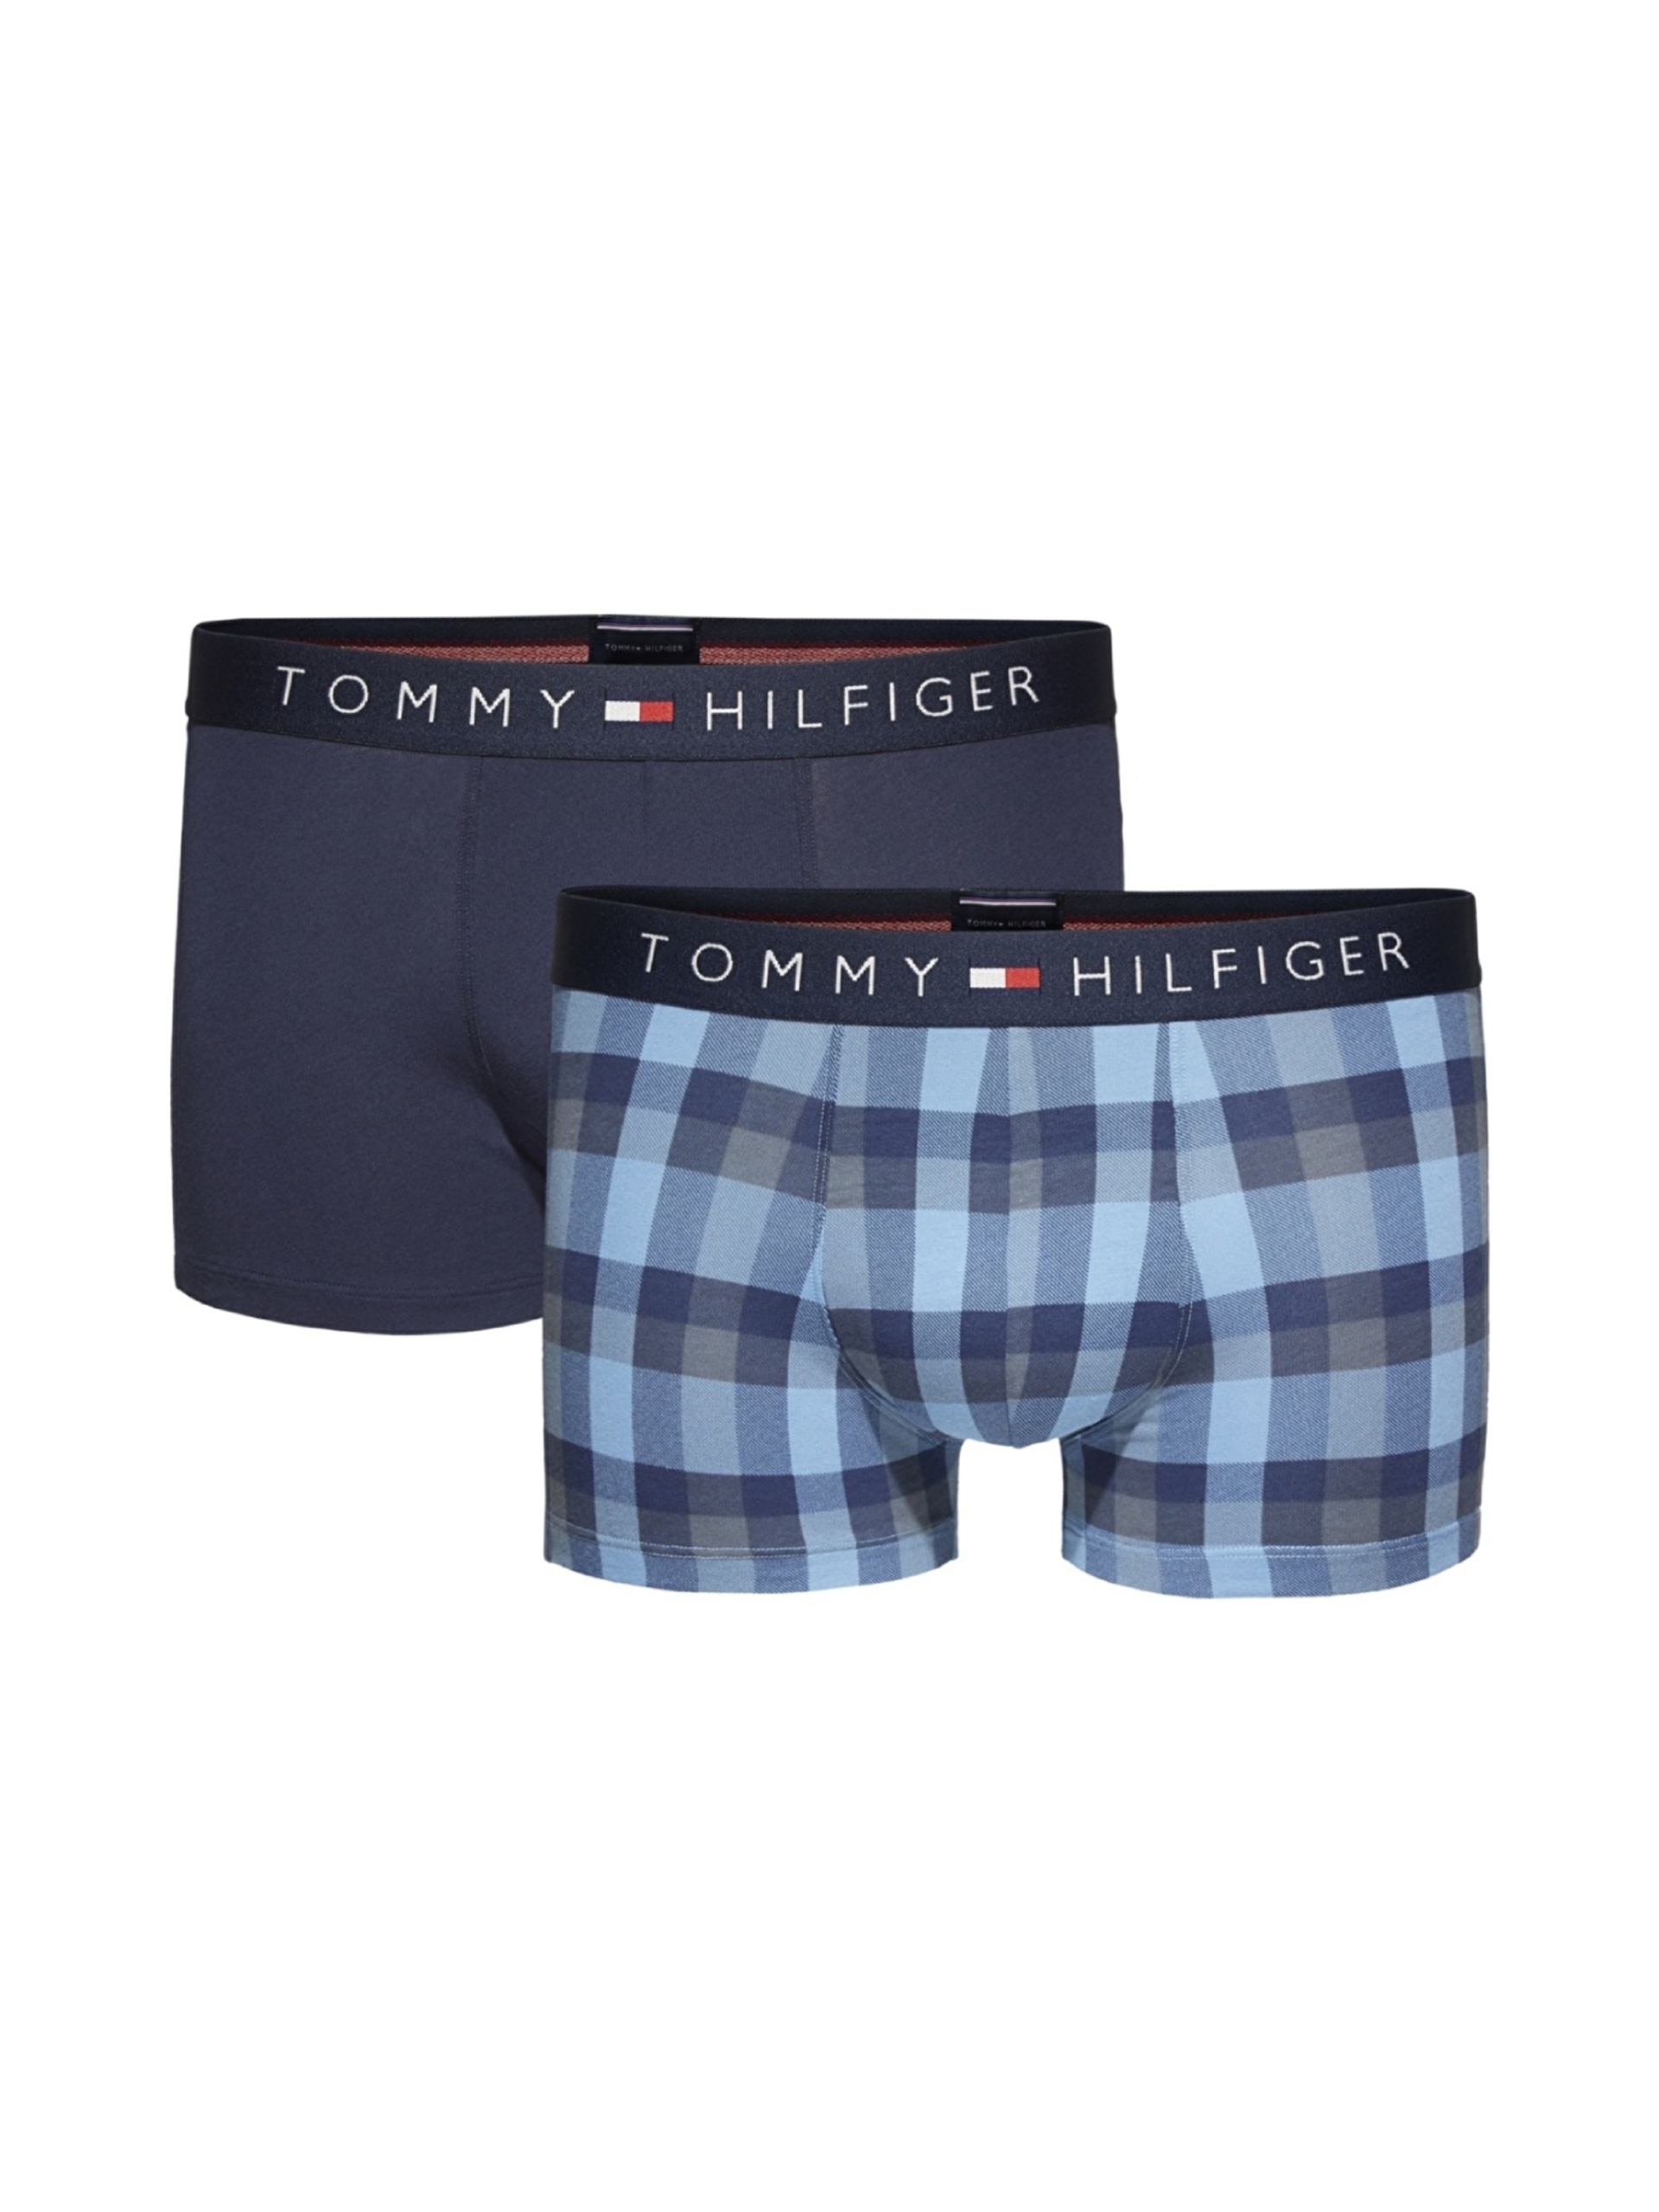 Tommy Hilfiger pánské boxerky 2 pack - M (001)